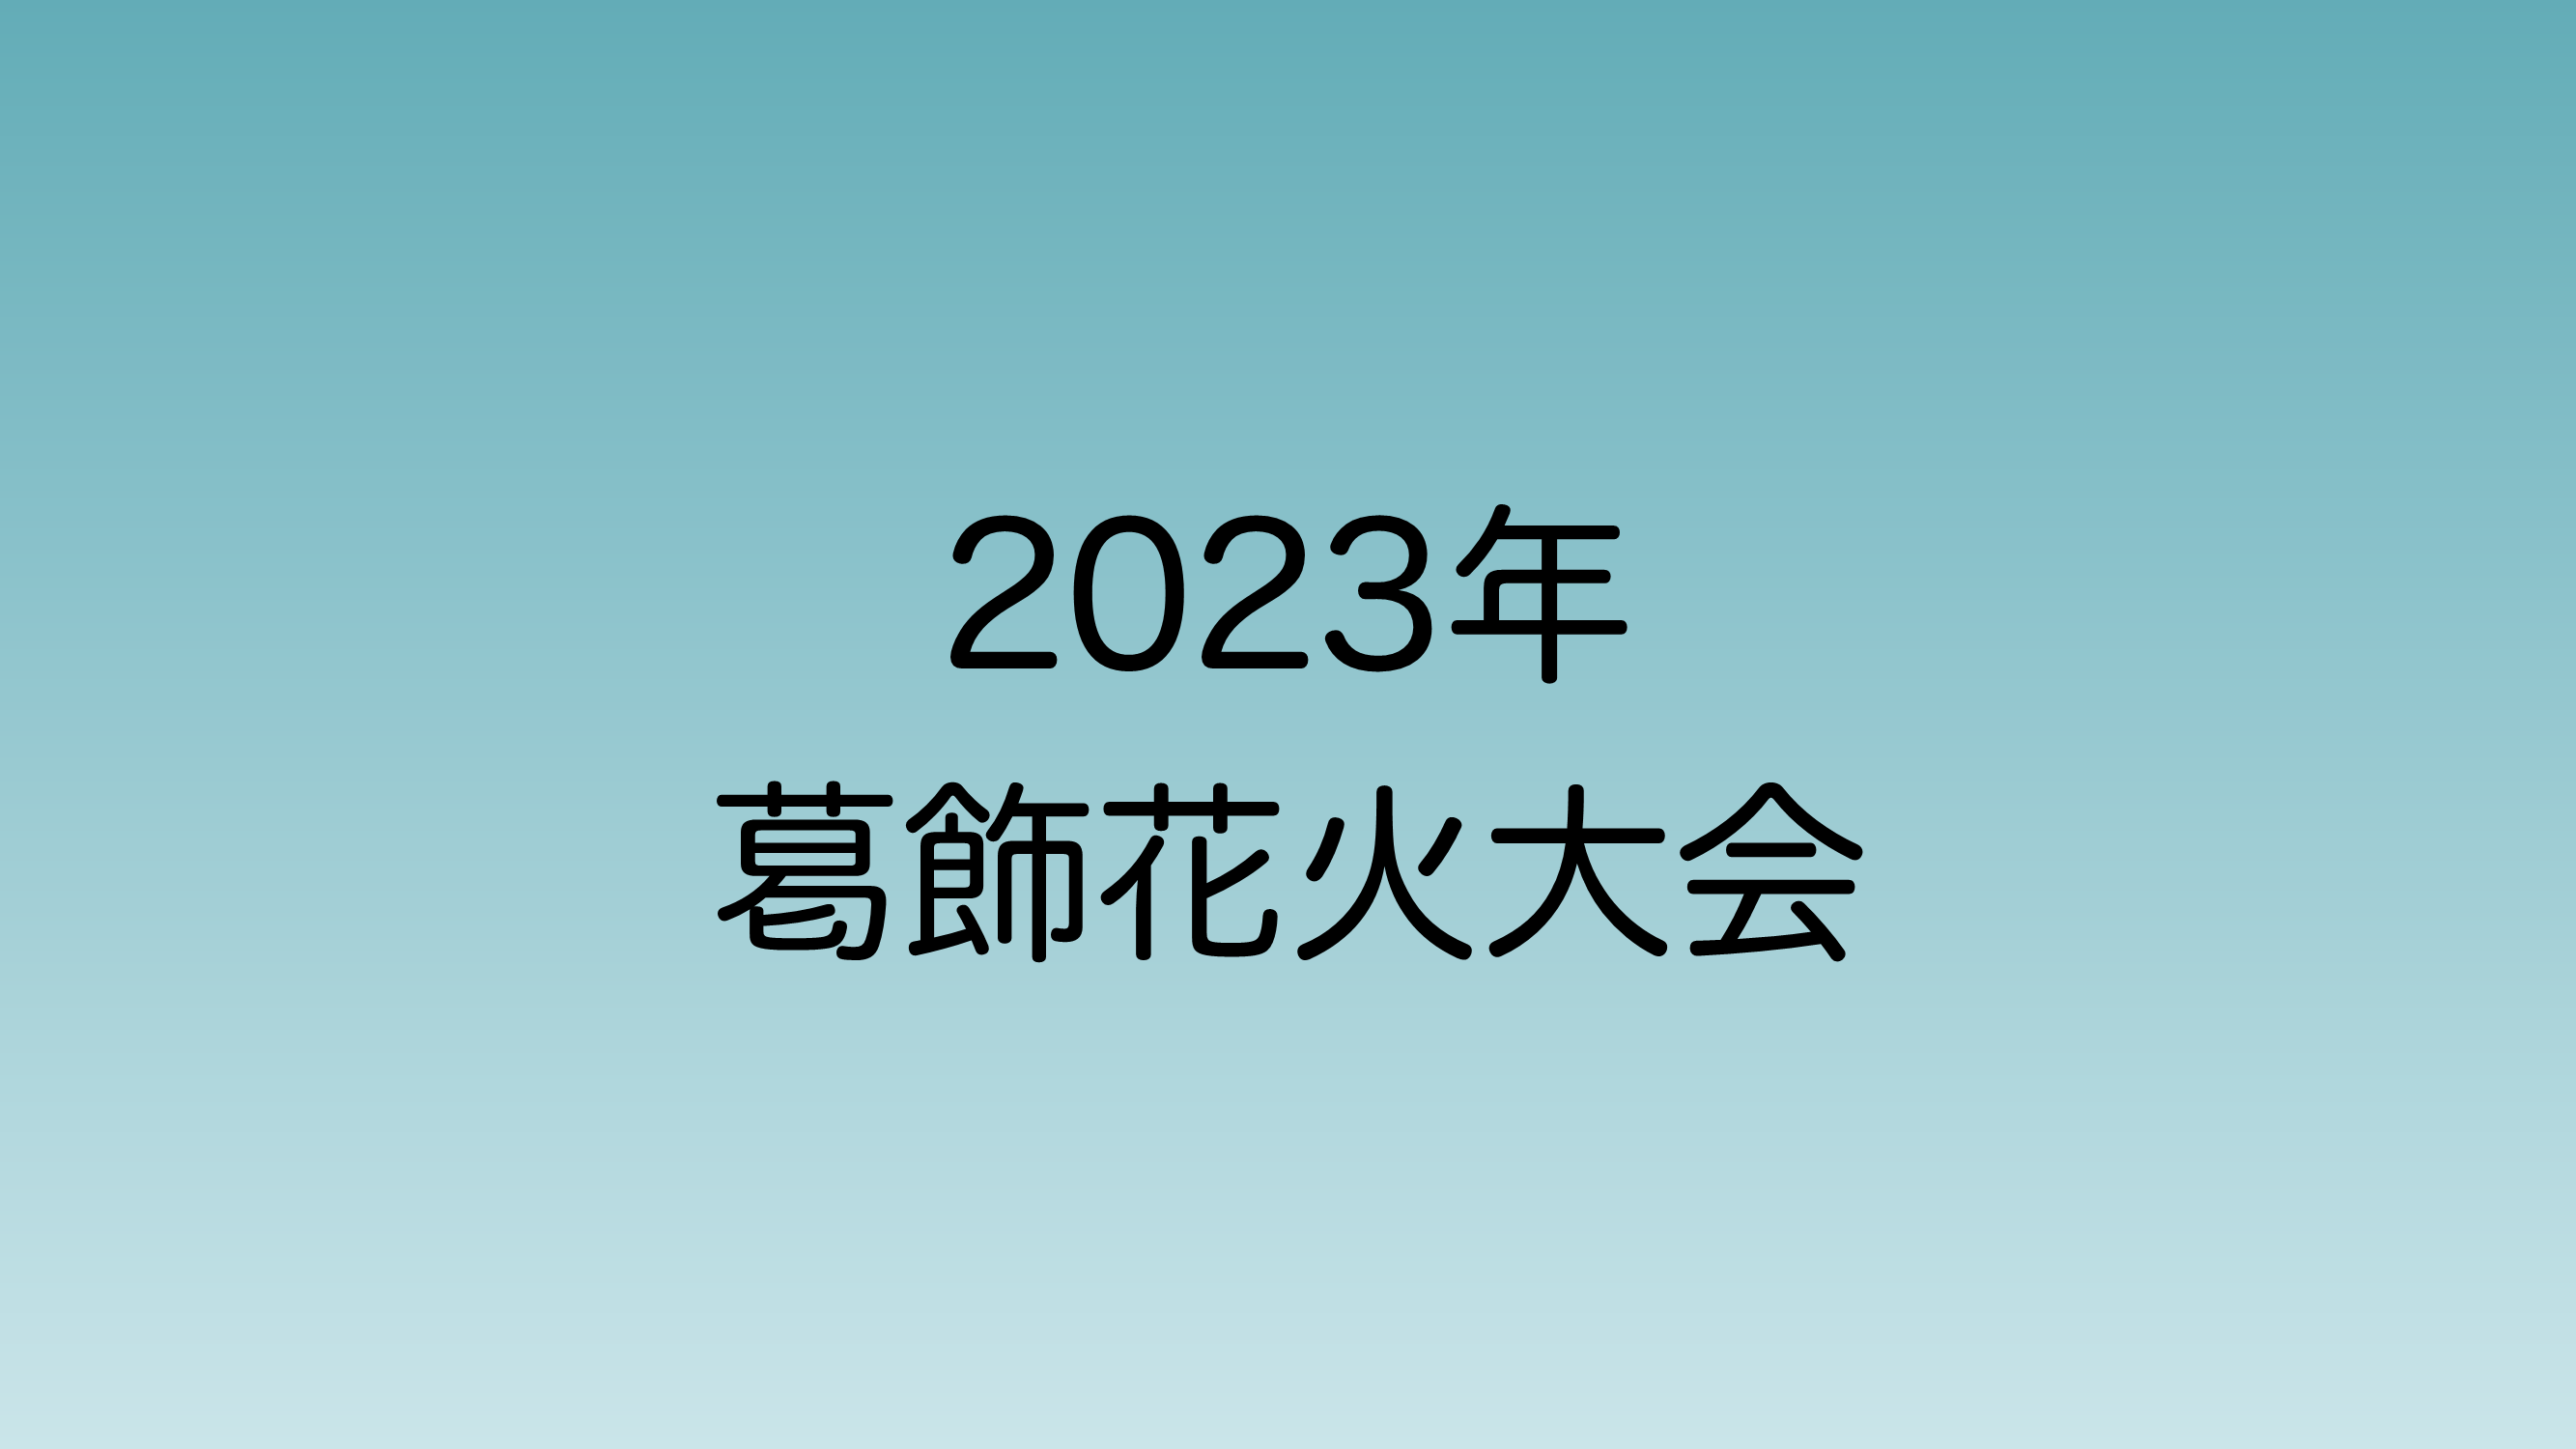 2023年金町、柴又付近で開催される葛飾花火大会